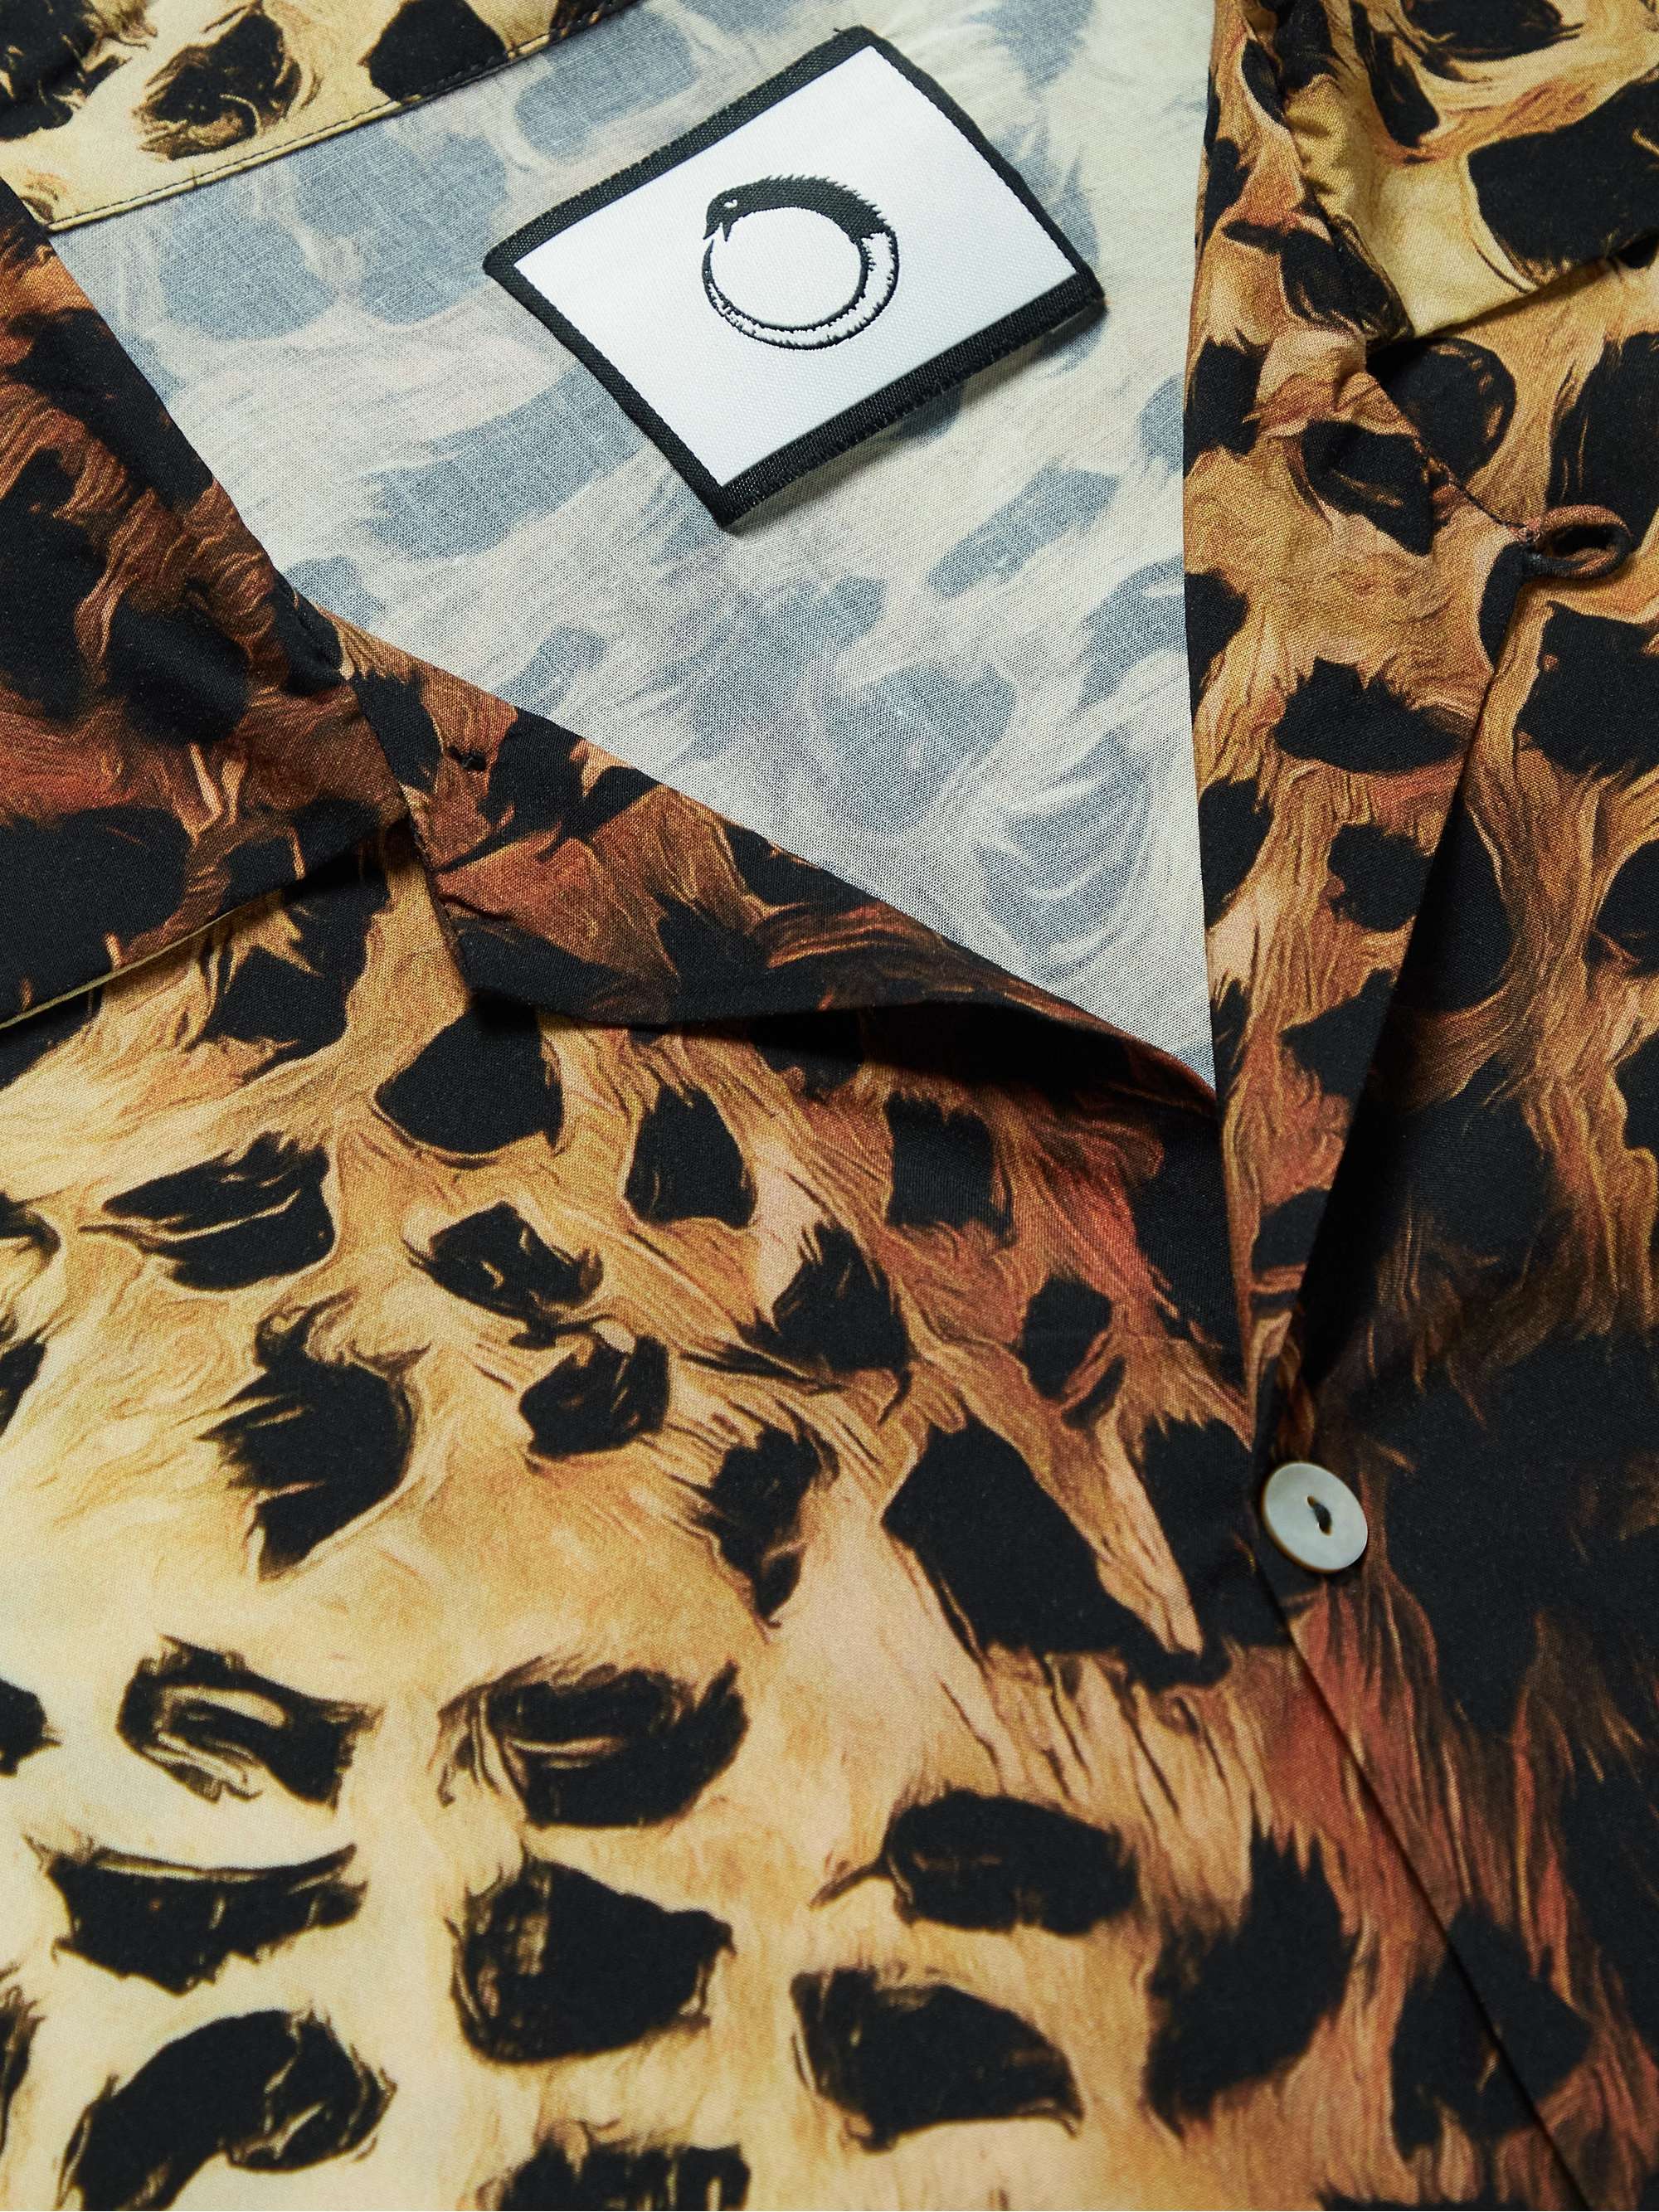 ENDLESS JOY Convertible-Collar Leopard-Print Woven Shirt